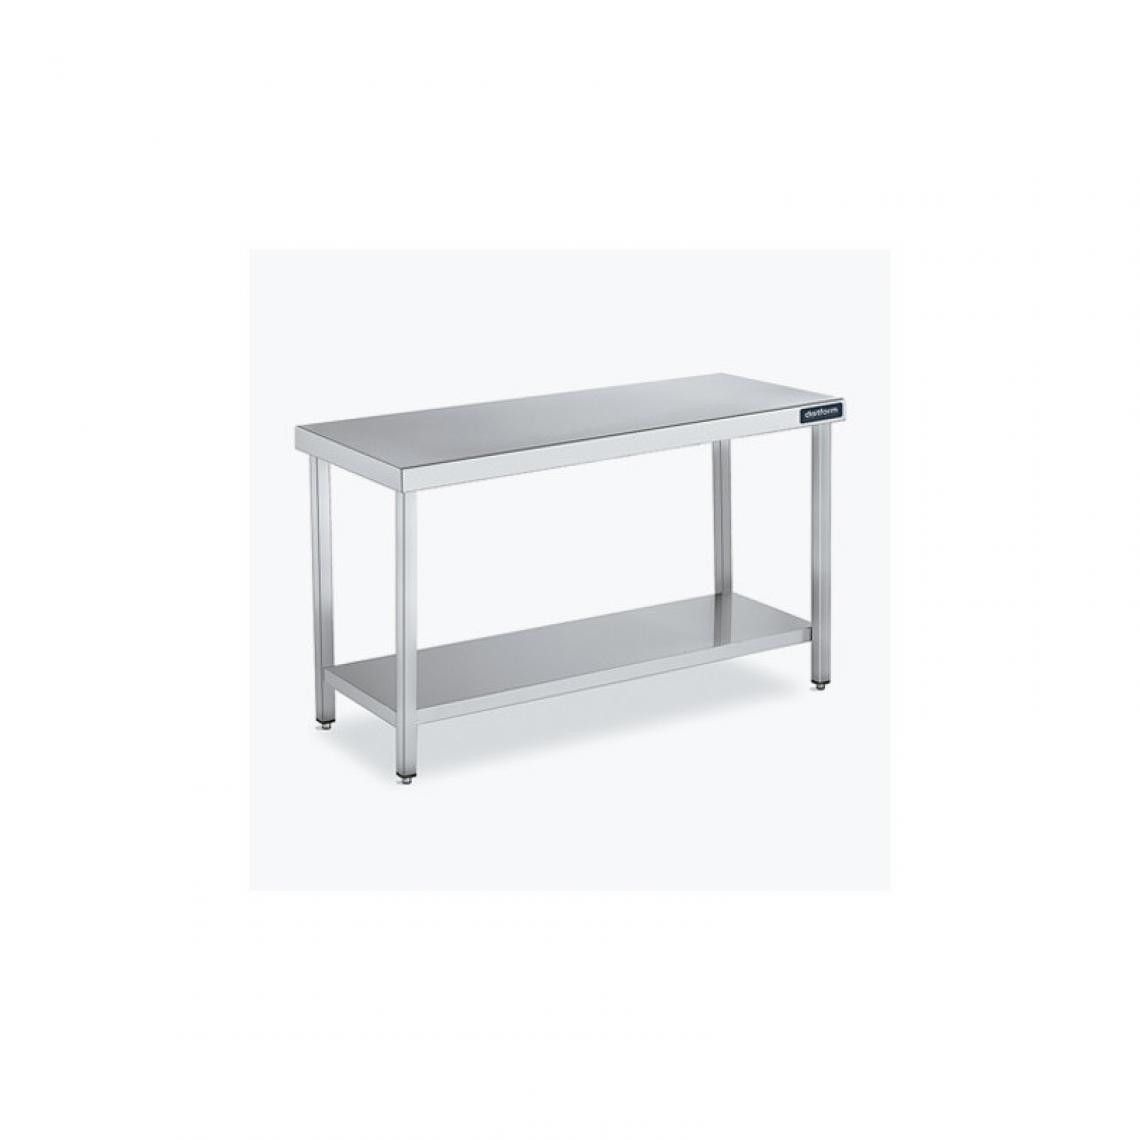 DISTFORM - Table Centrale 600x600 avec Étagère - Distform - Inox 18/101300x600x850mm - Tables à manger